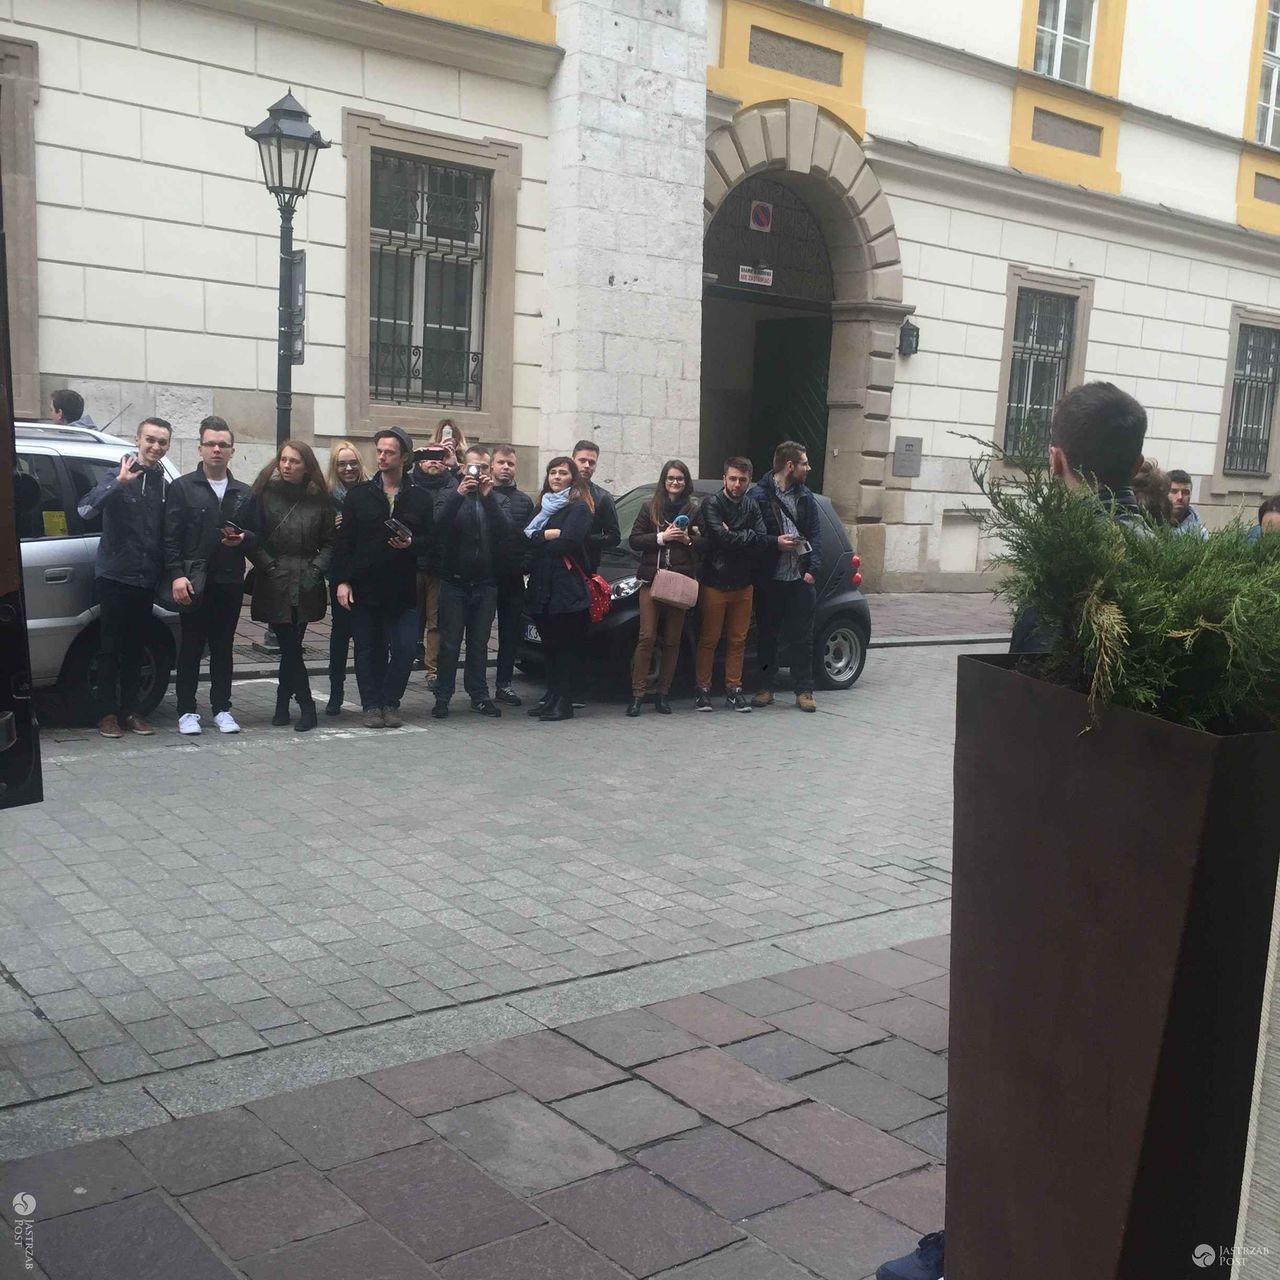 Fani Mariah Carey w Krakowie przed hotelem Stary